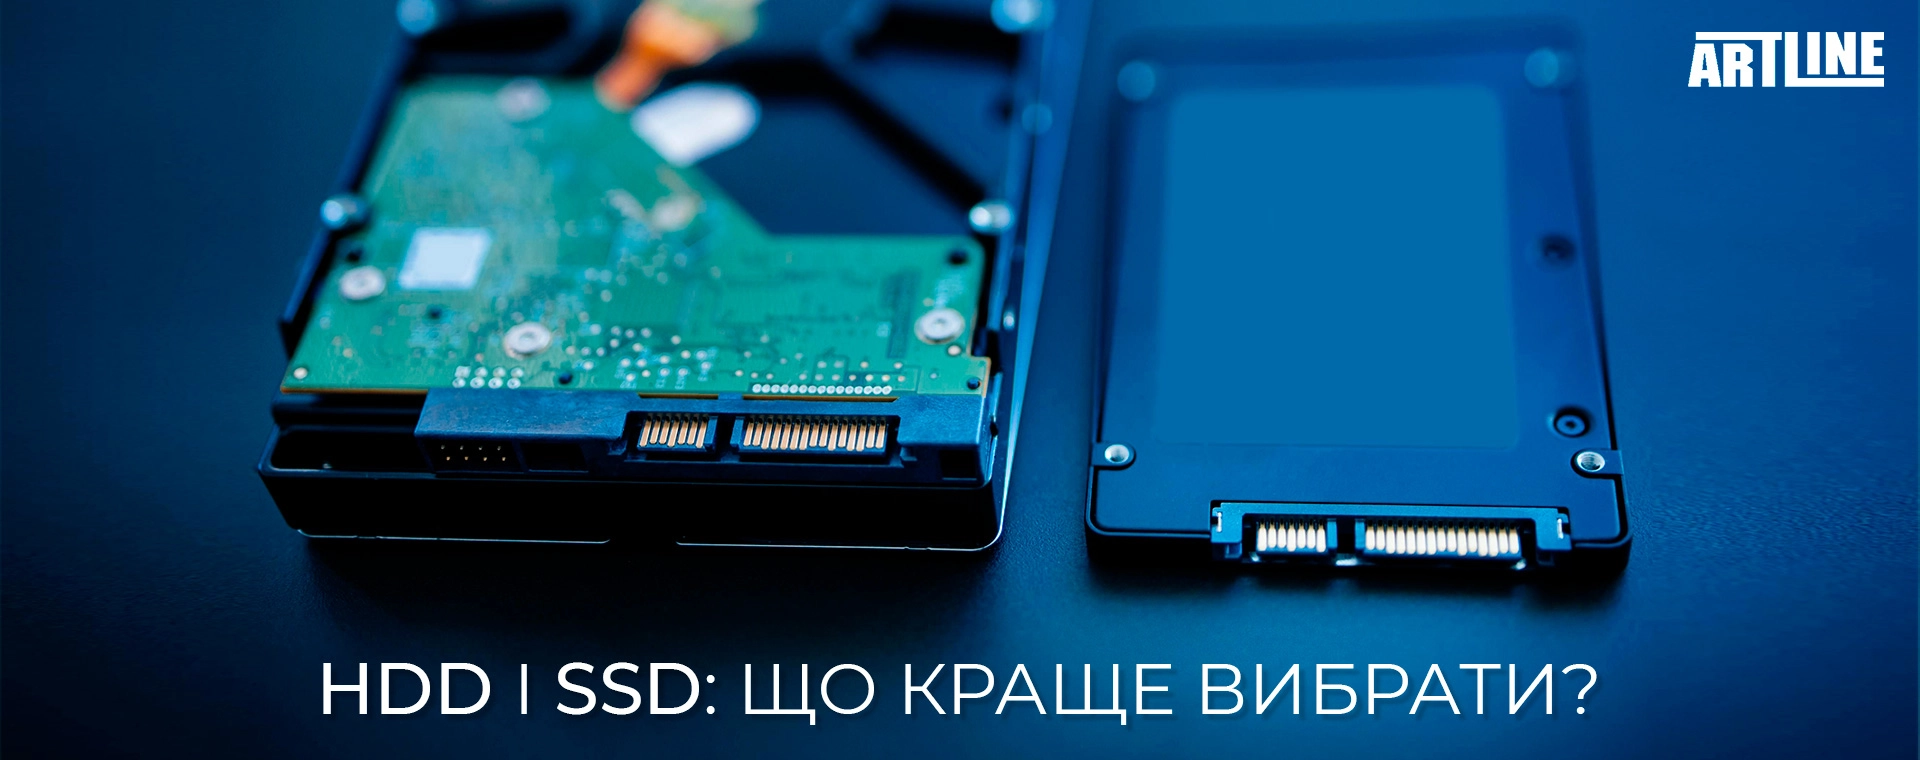 Можна використовувати SSD як зовнішній пристрій на прикладі пристроїв з USB з'єднанням?